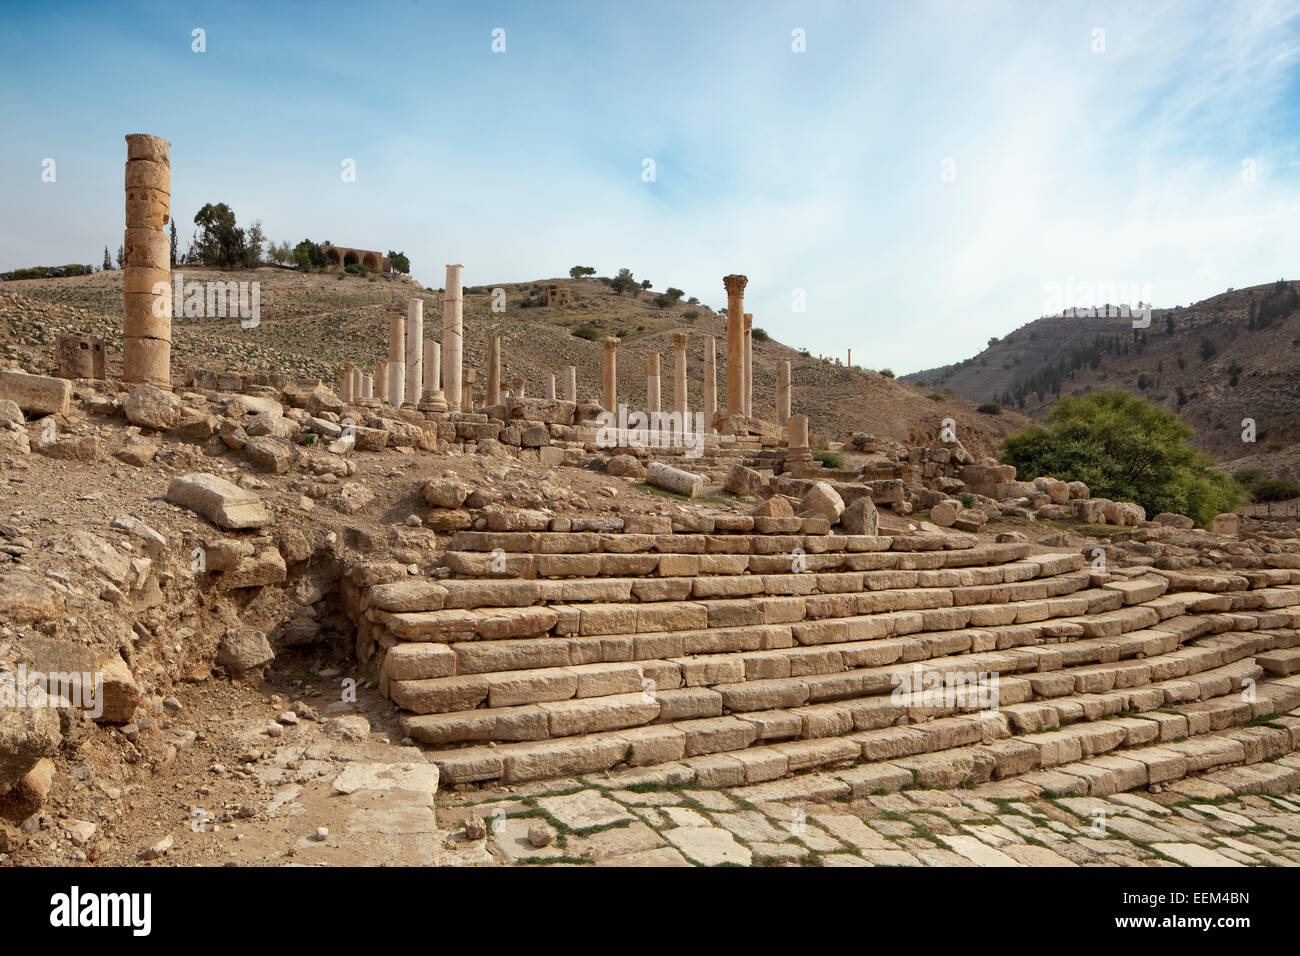 Treppen, die byzantinische Basilika, antiken Ruinen von Pella, Tabaqat Fahl, Wadi Jirm el Moz, Jordan-Tal in der Nähe von Irbid, Jordanien Stockfoto